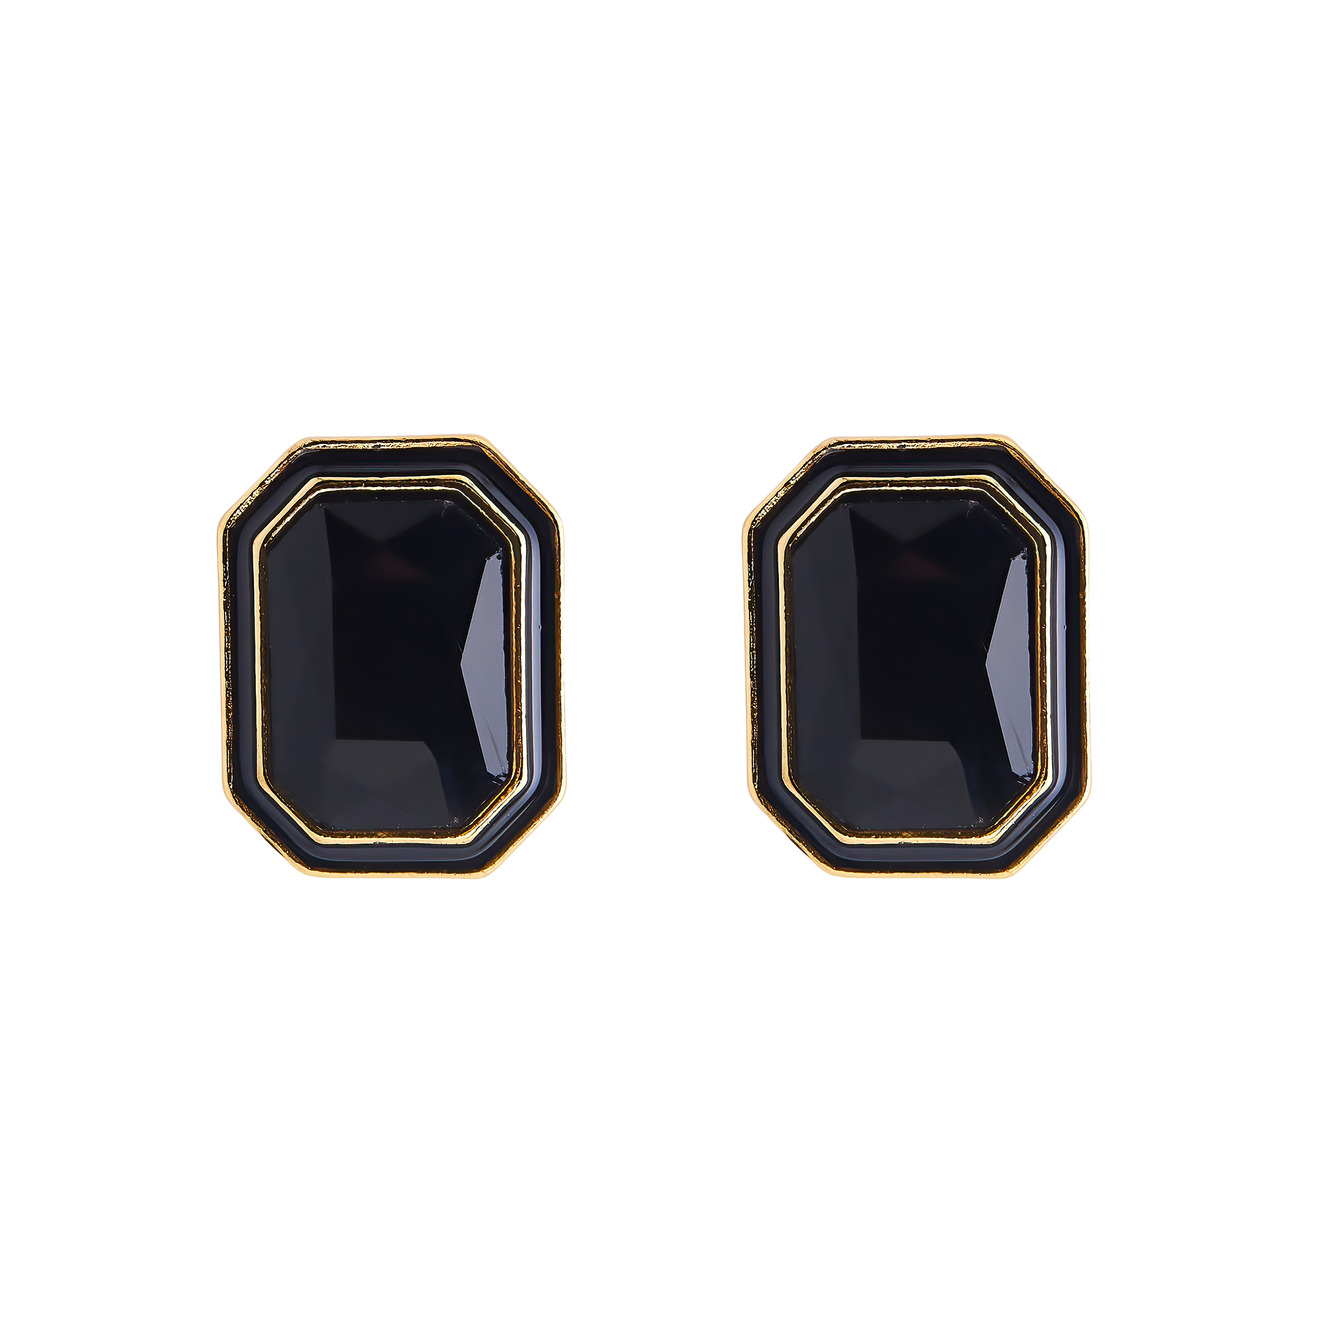 Herald Percy Крупные золотистые серьги с черными кристаллами и черной эмалью